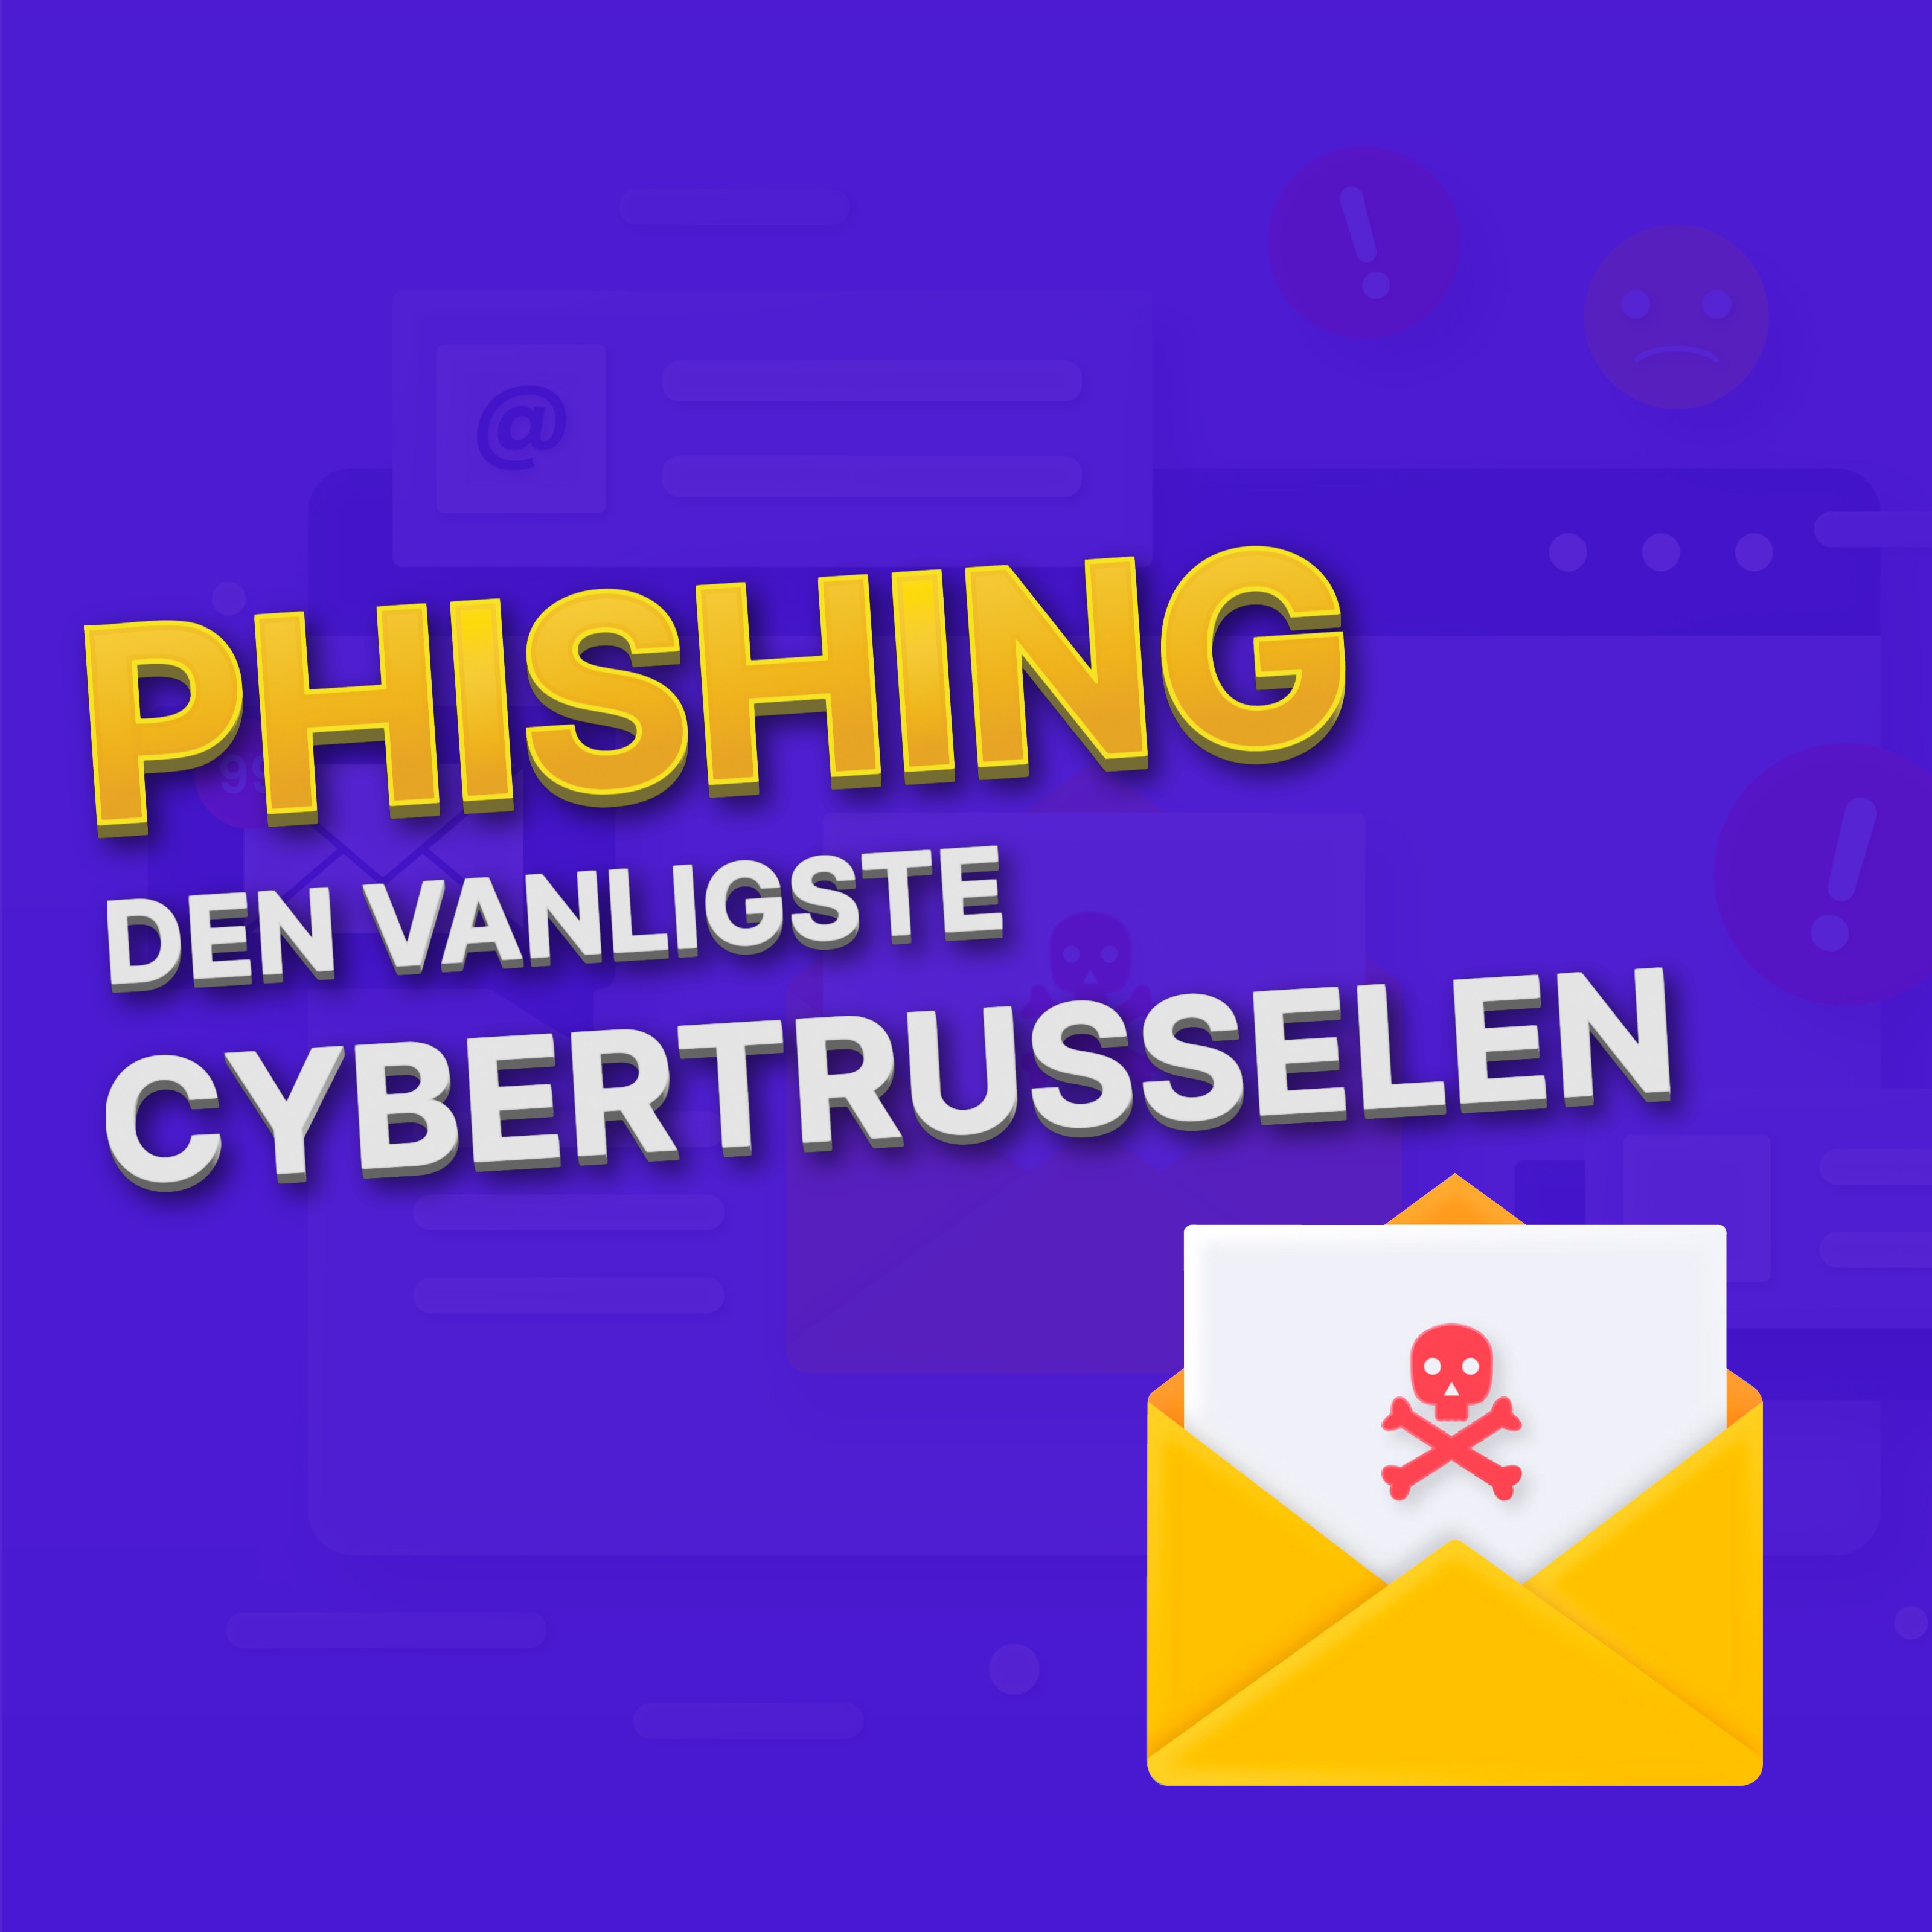 Phishing - hvordan identifisere og beskytte seg mot svindel